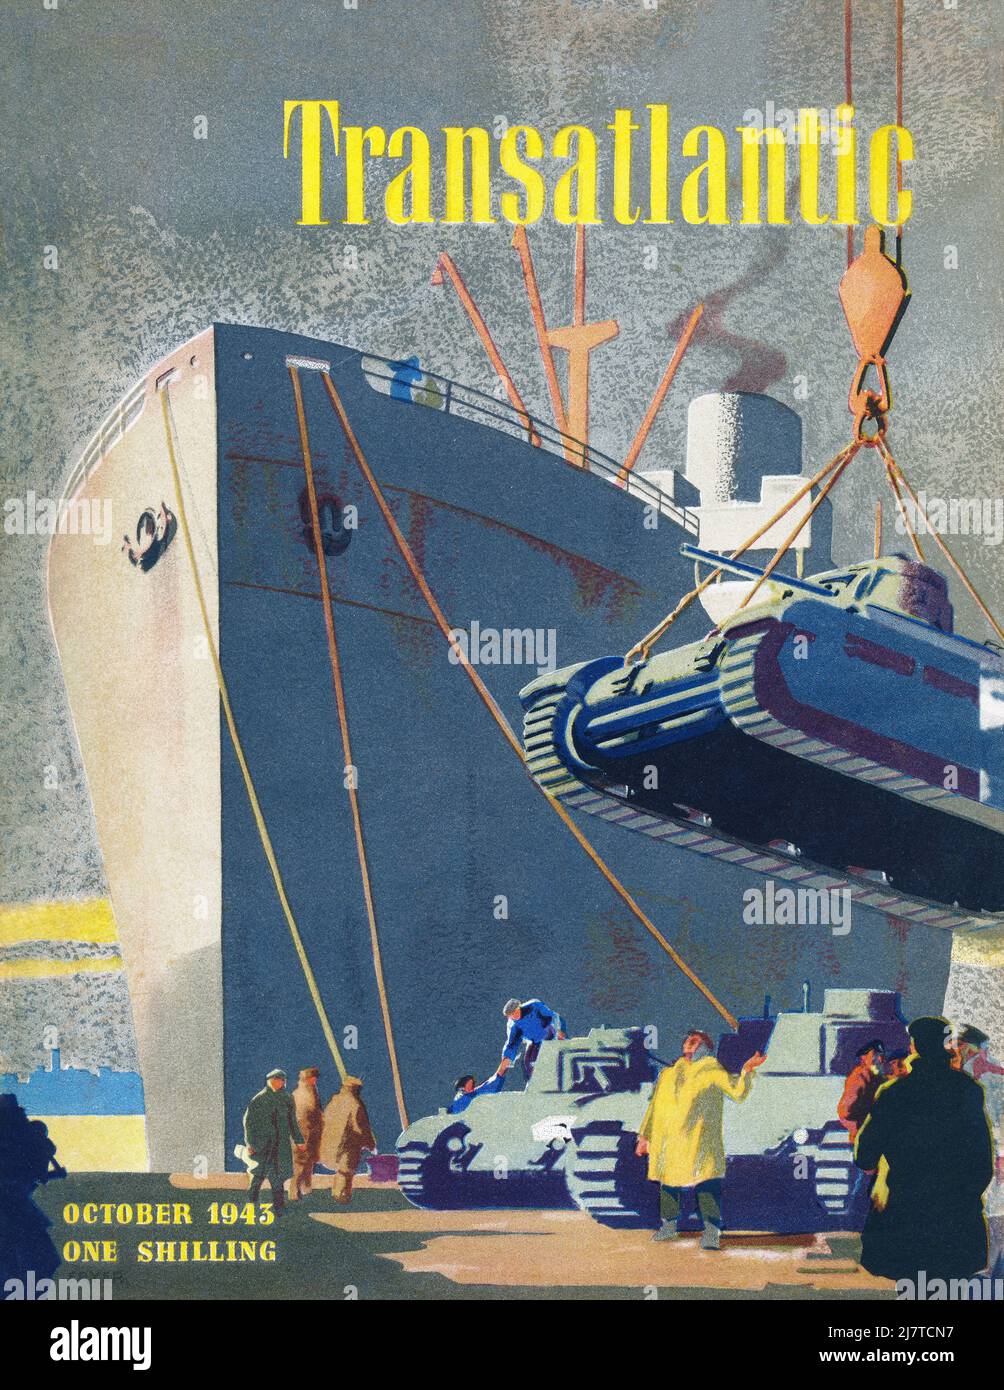 Copertina vintage della rivista transatlantica da ottobre 1943. Foto Stock